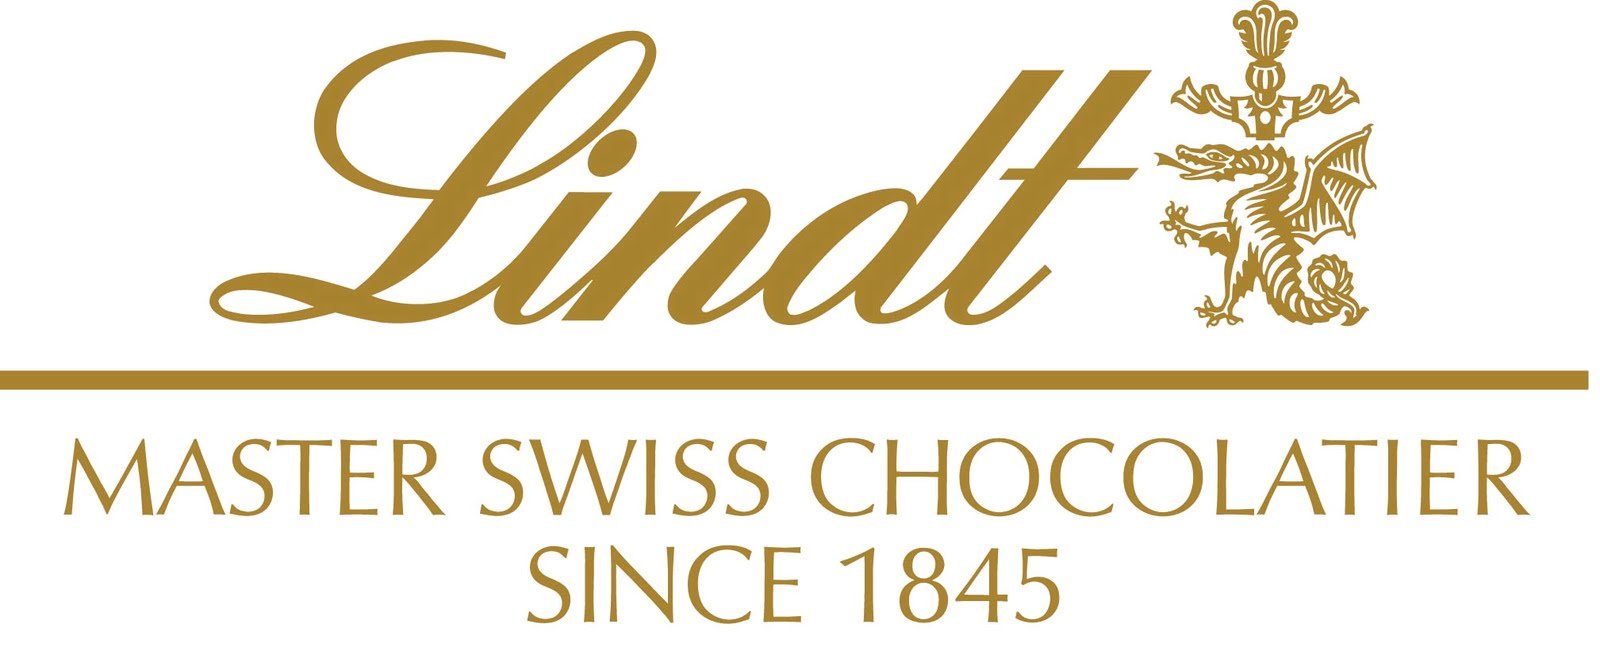 Lindt-logo-2.jpg